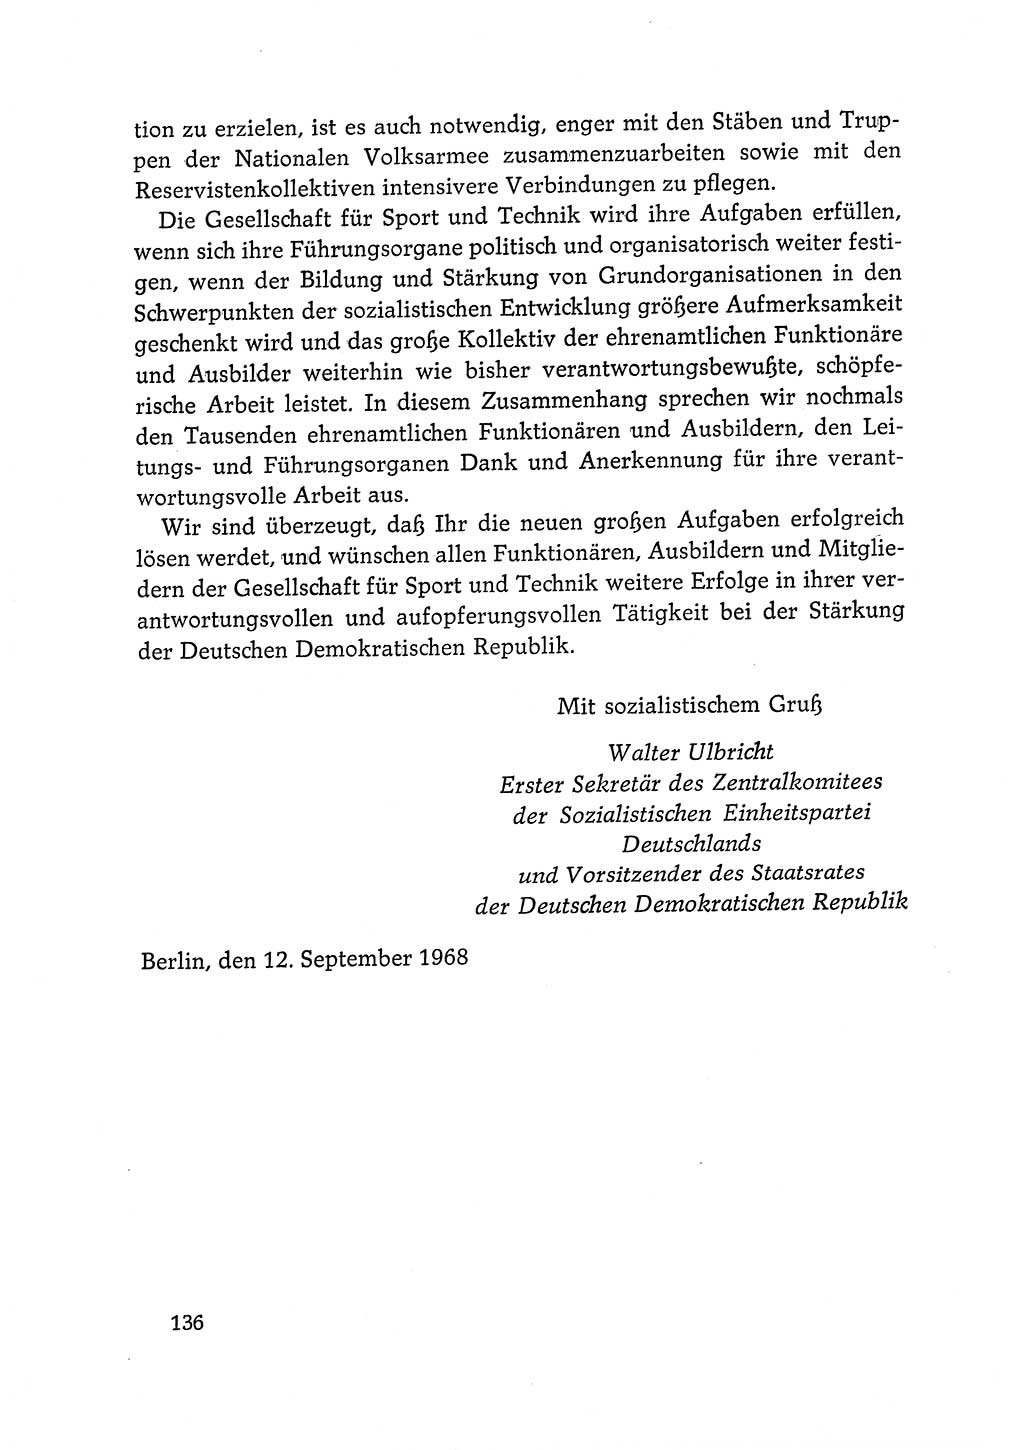 Dokumente der Sozialistischen Einheitspartei Deutschlands (SED) [Deutsche Demokratische Republik (DDR)] 1968-1969, Seite 136 (Dok. SED DDR 1968-1969, S. 136)